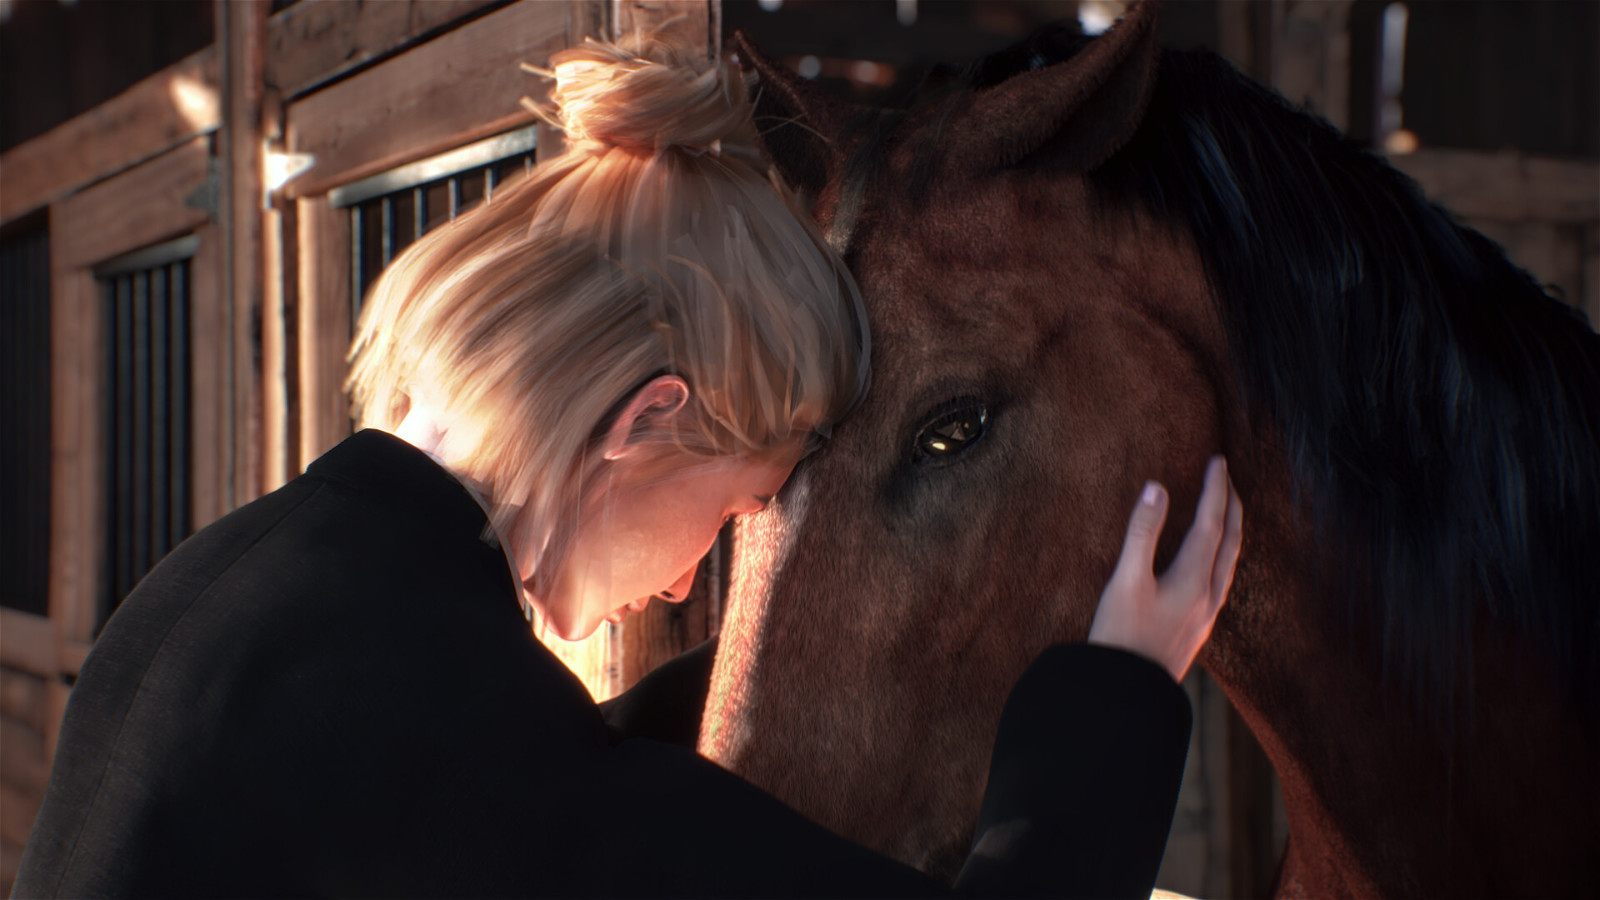 爱马士狂喜 模拟经营游戏《My Horse: Bonded Spirits》Steam页面上线 二次世界 第11张